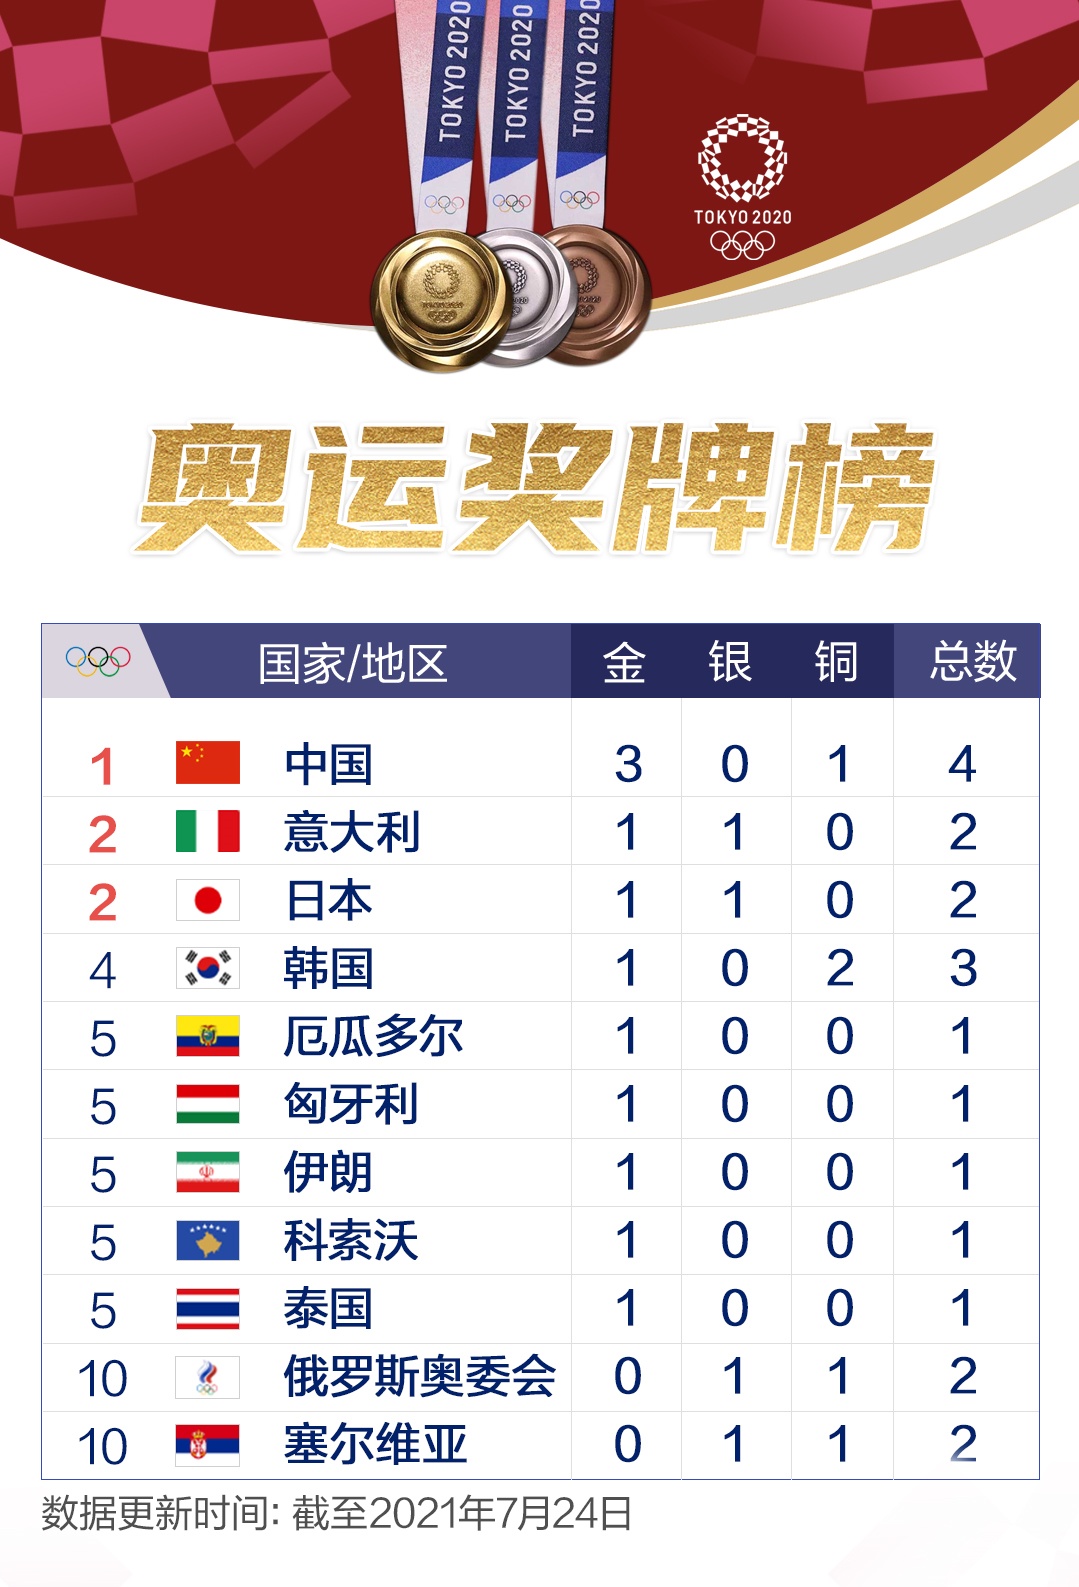 中国奥运会 奖牌榜图片